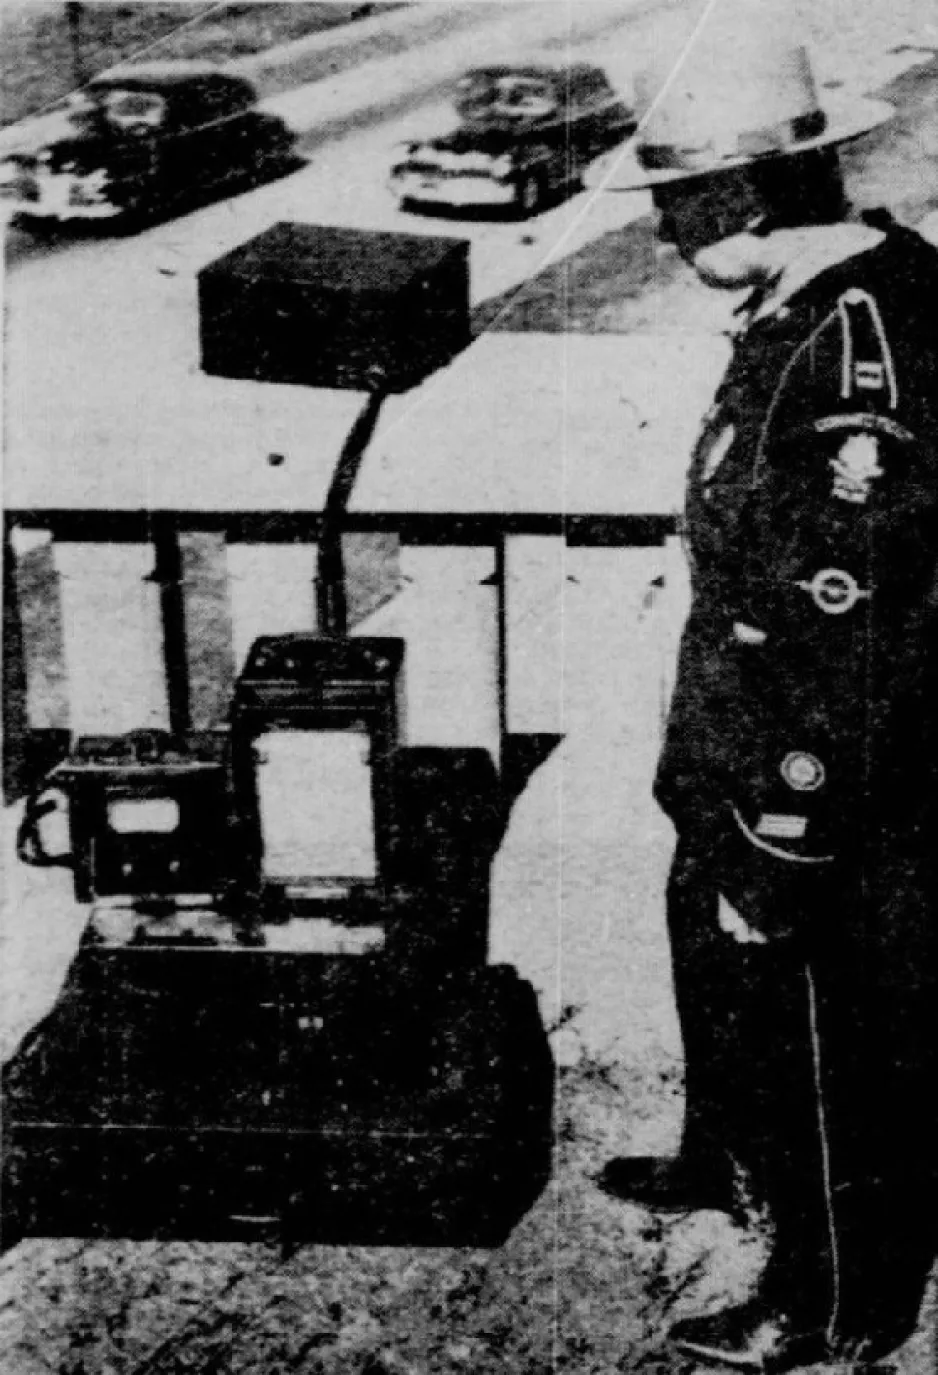 An Automatic Signal speed radar used near Glastonbury, Connecticut. Anon., “L’actualité en images – Pièges à comboys.” La Patrie, 16 February 1949, 14.